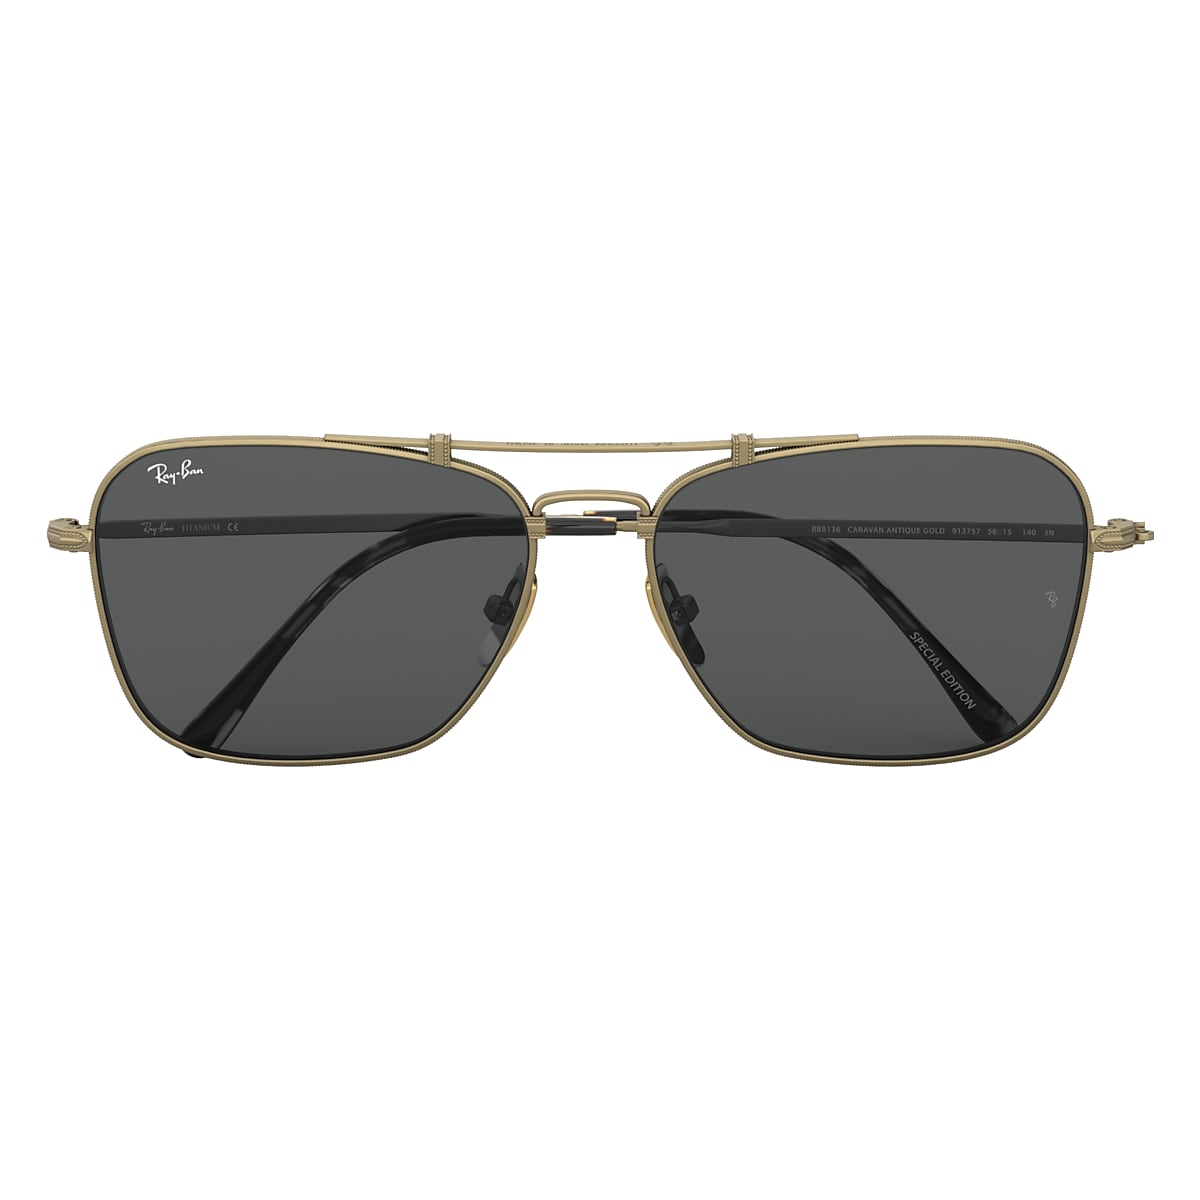 CARAVAN TITANIUM Sunglasses in Antique Gold and Grey - RB8136 